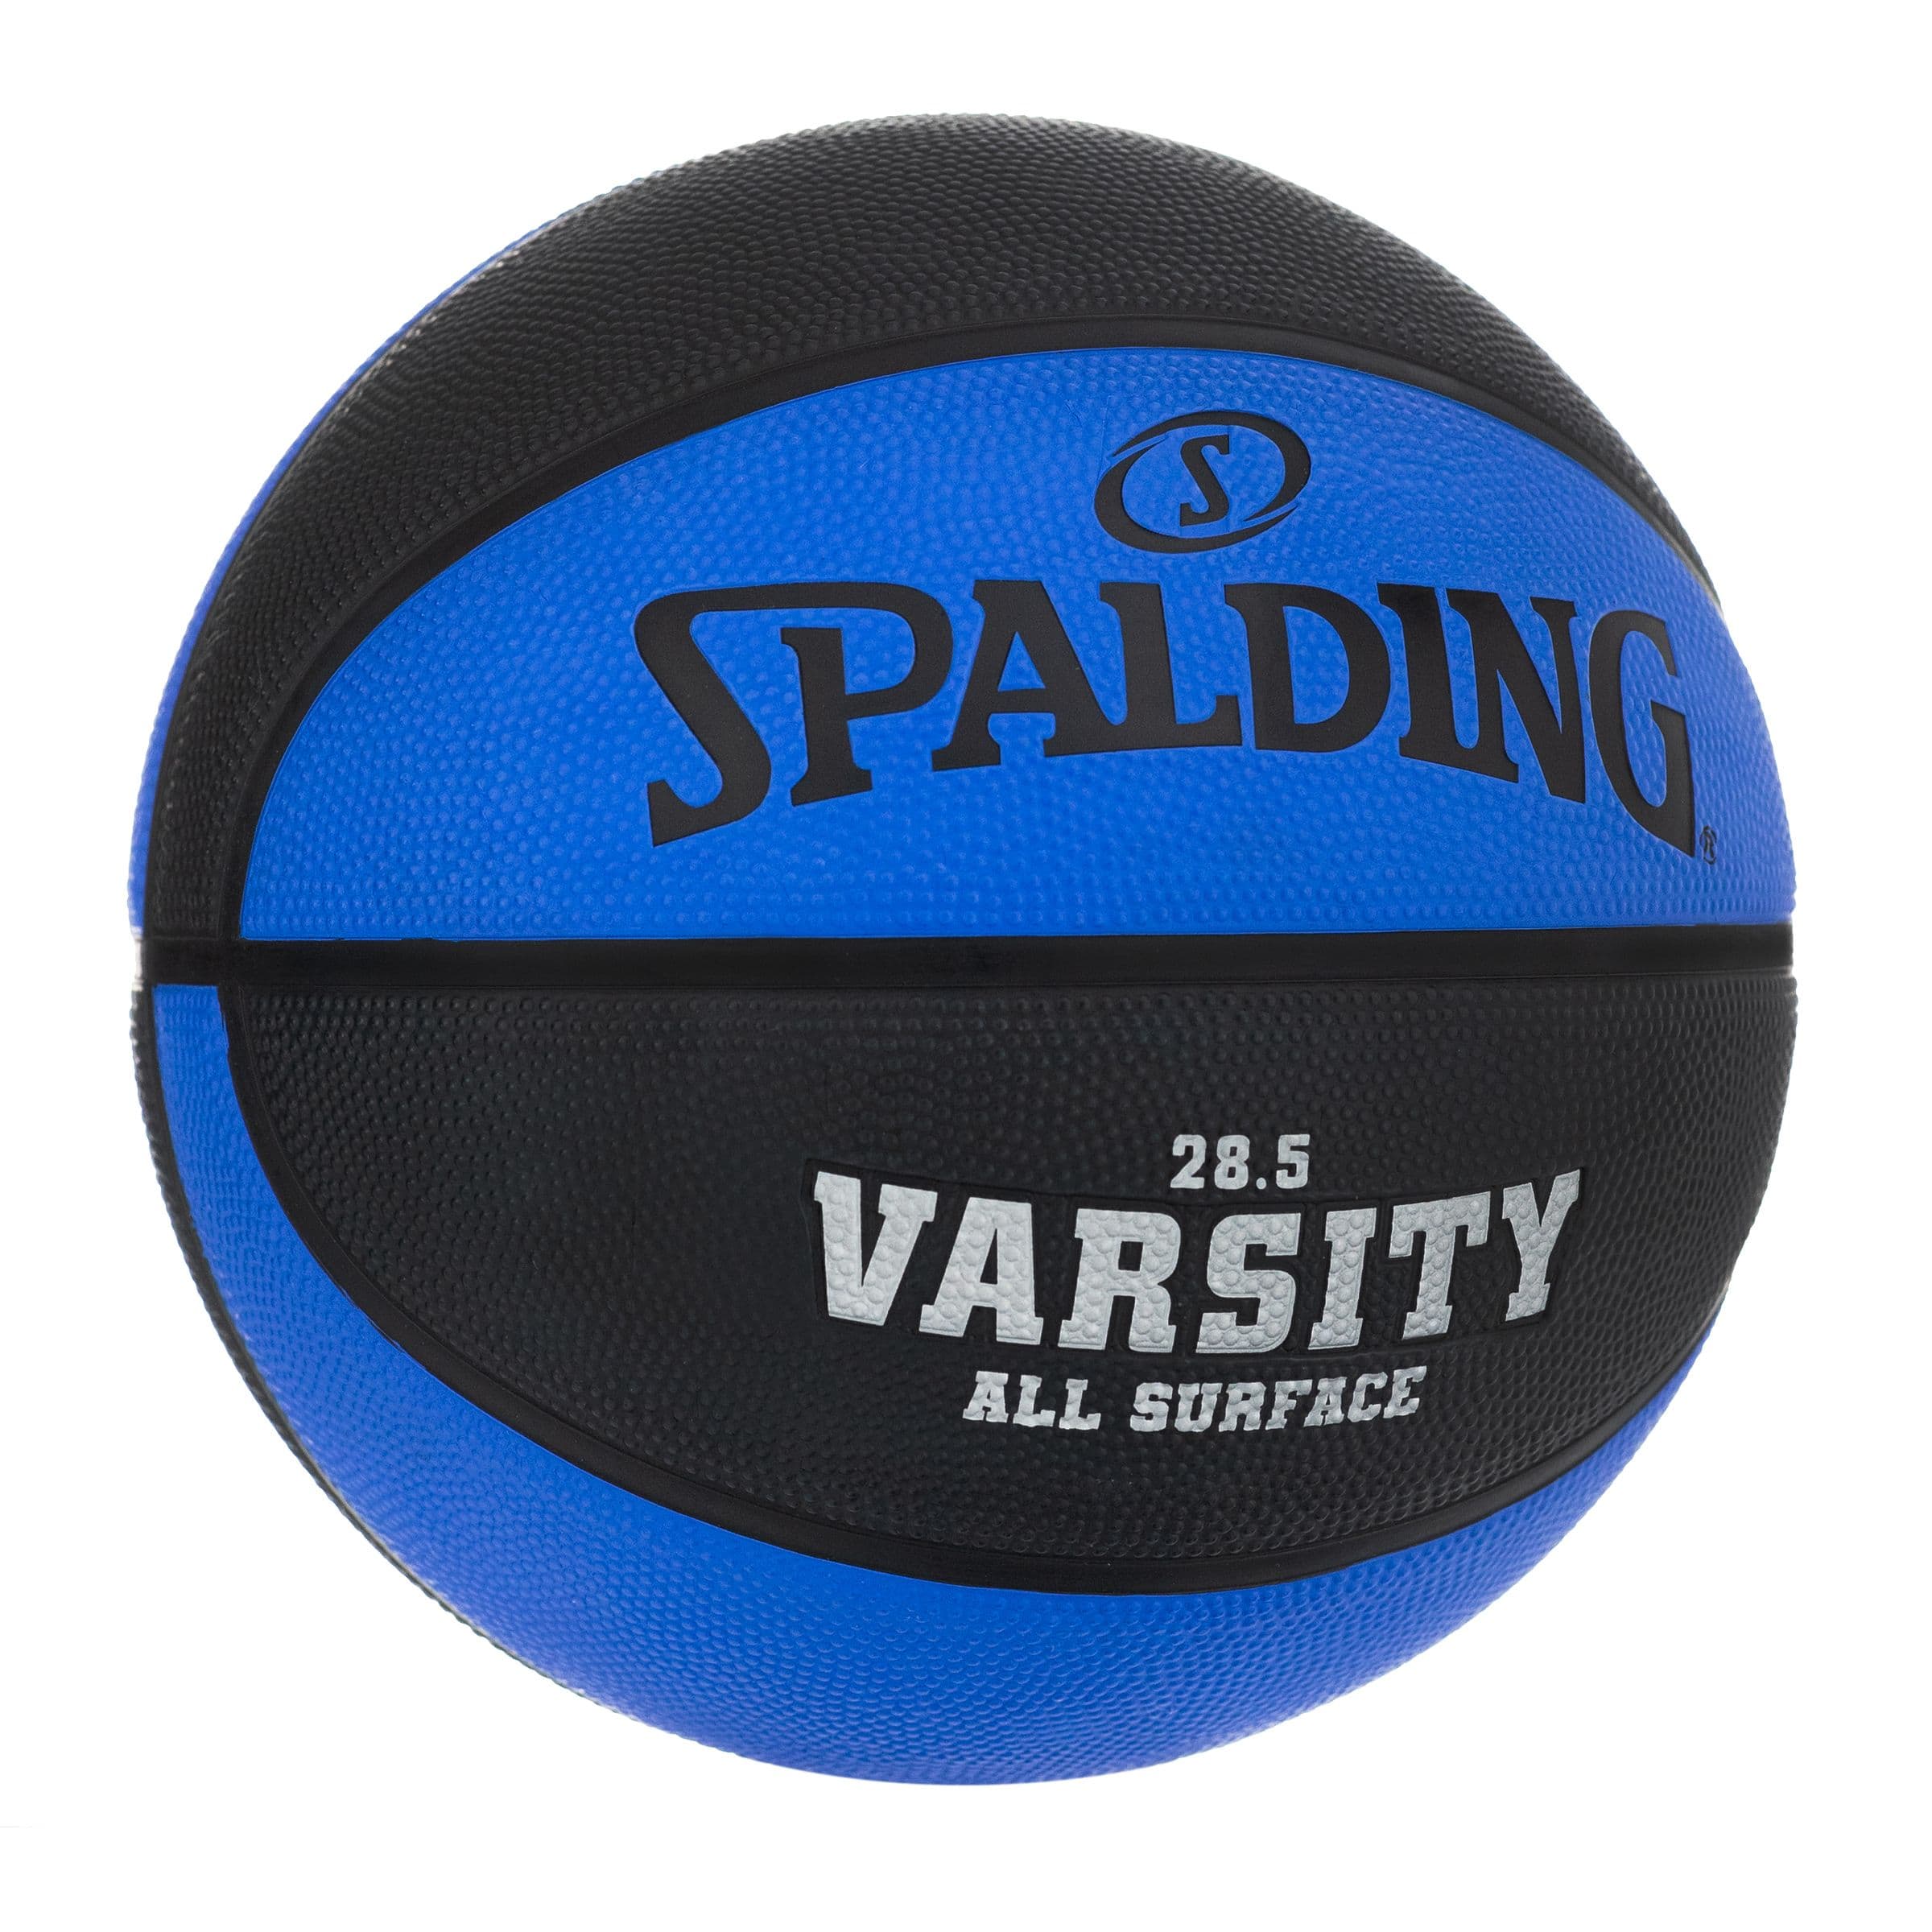 Chaussettes Spalding pour le basket-ball - Sport time